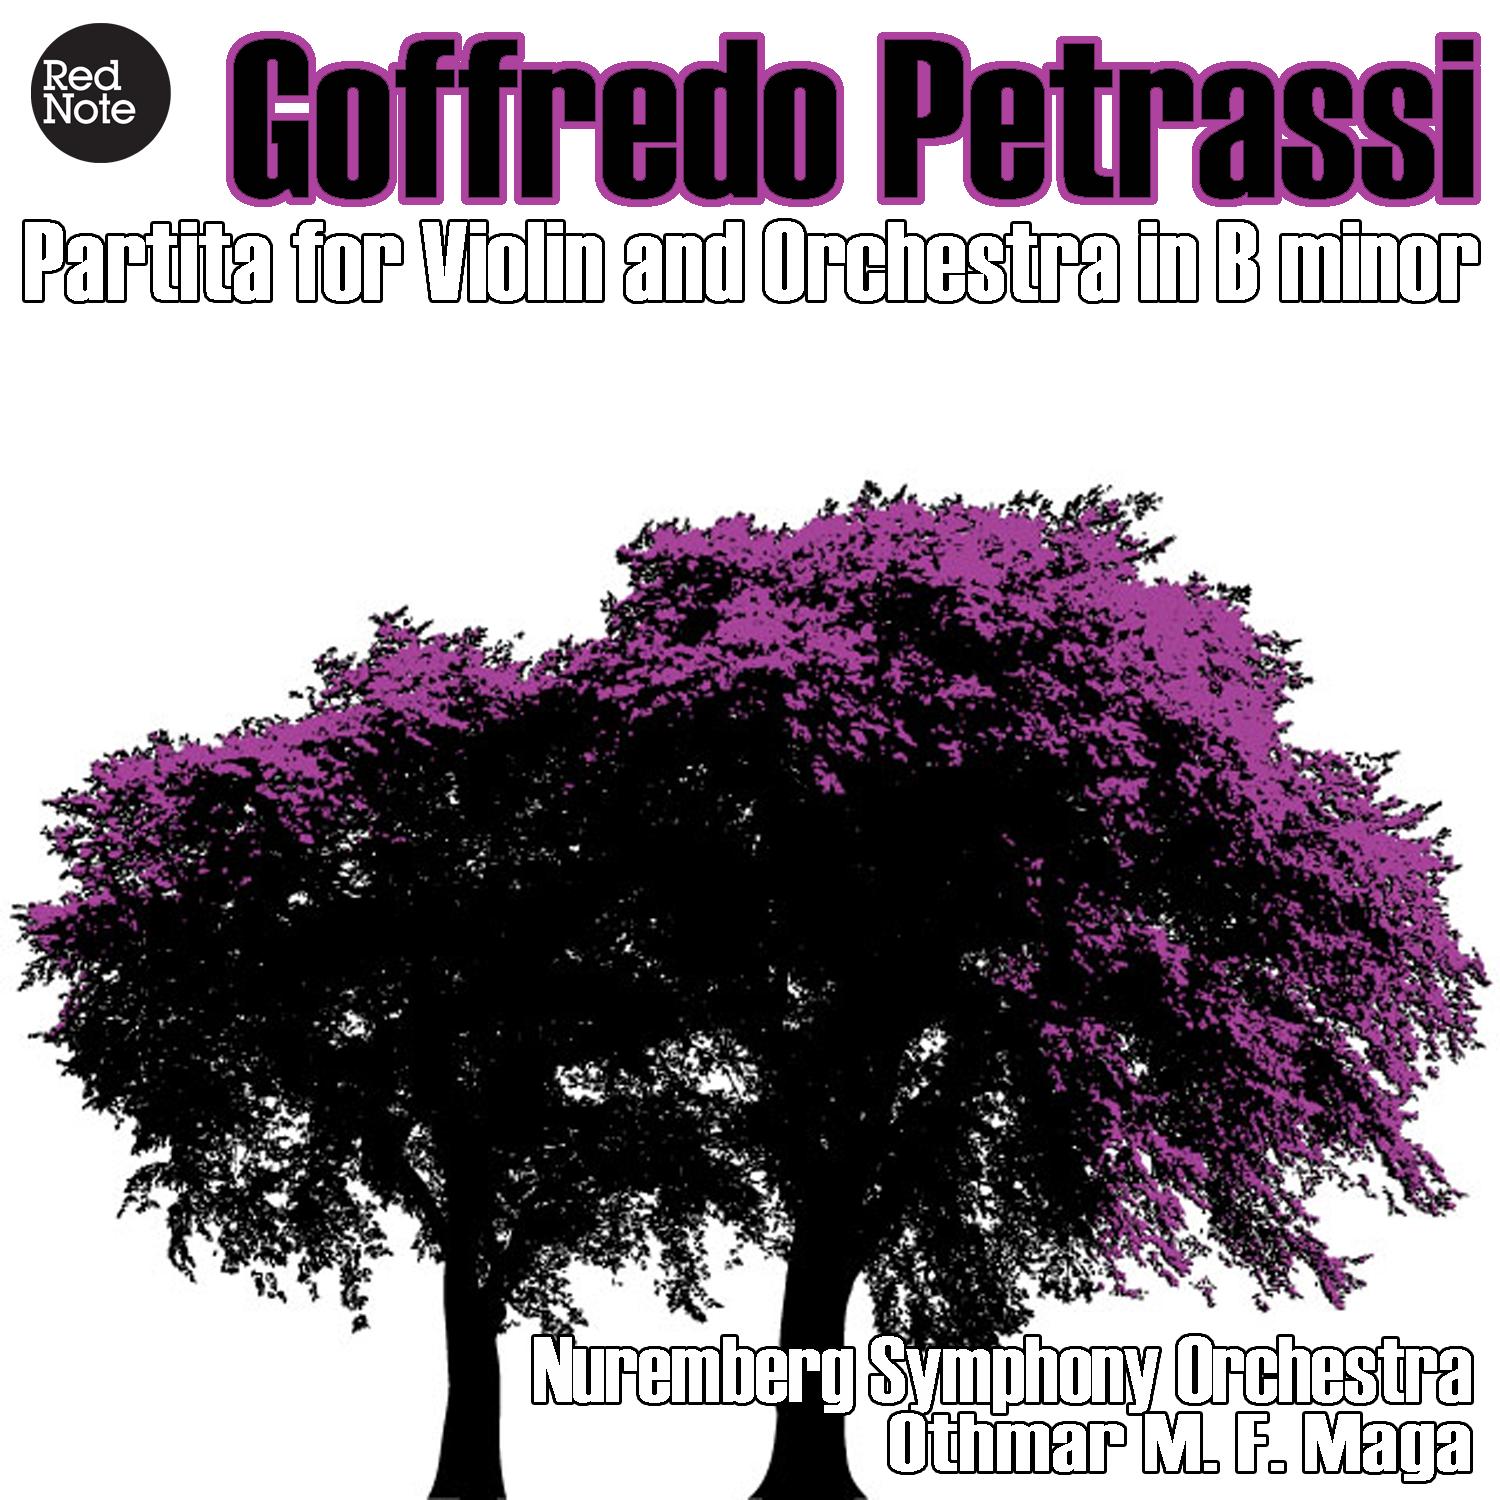 Petrassi: Partita for Violin and Orchestra in B minor